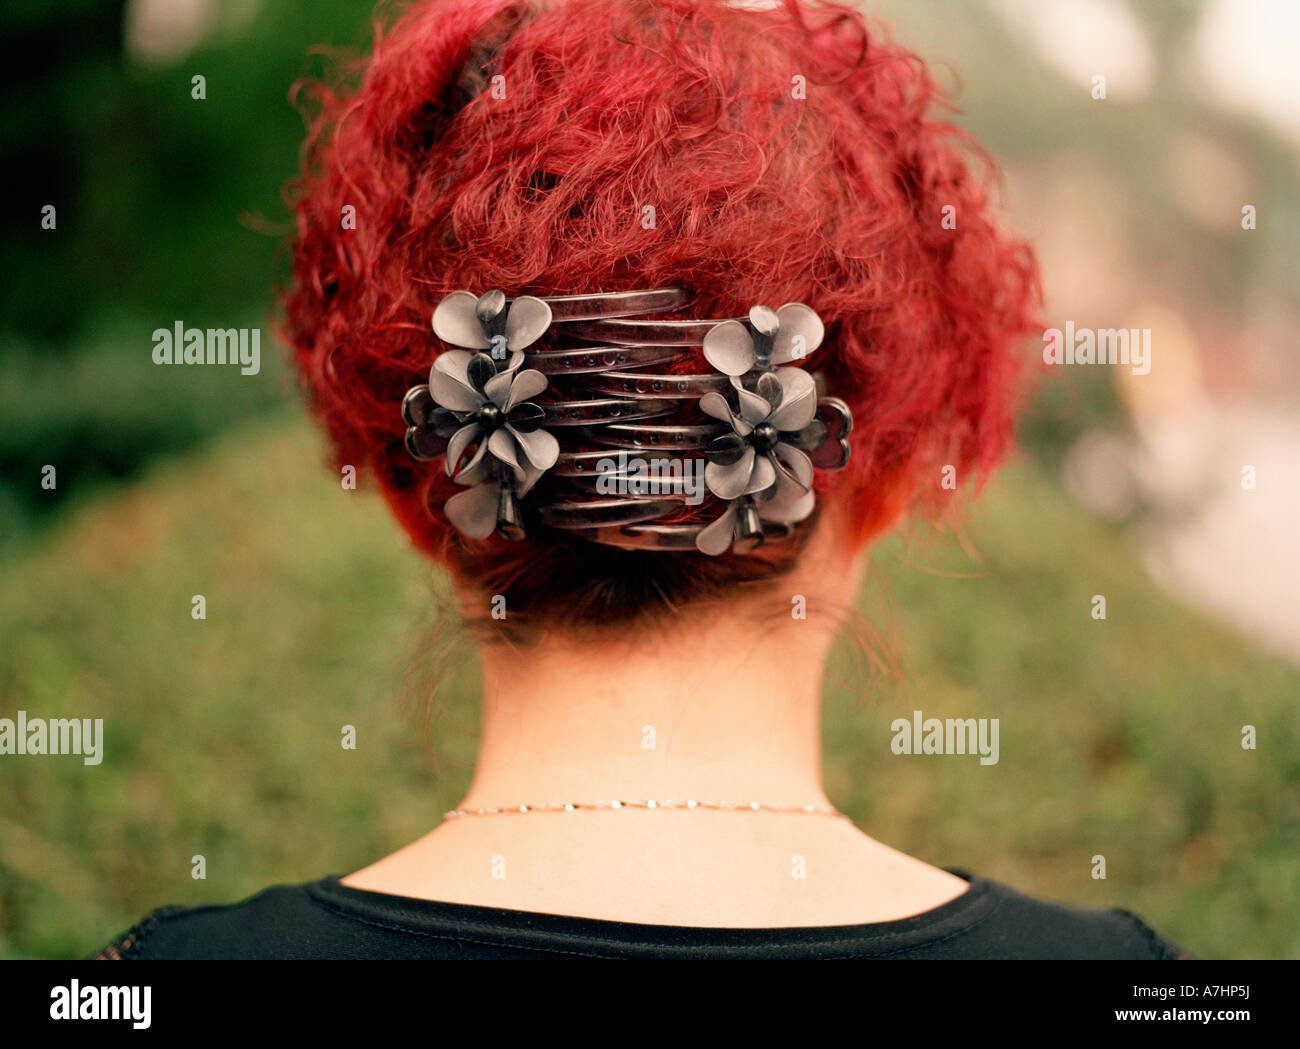 Un ritratto della parte posteriore di una donna cinese s testa con luminosi capelli rossi e grandi fascette che tengono in posizione in un parco Foto Stock